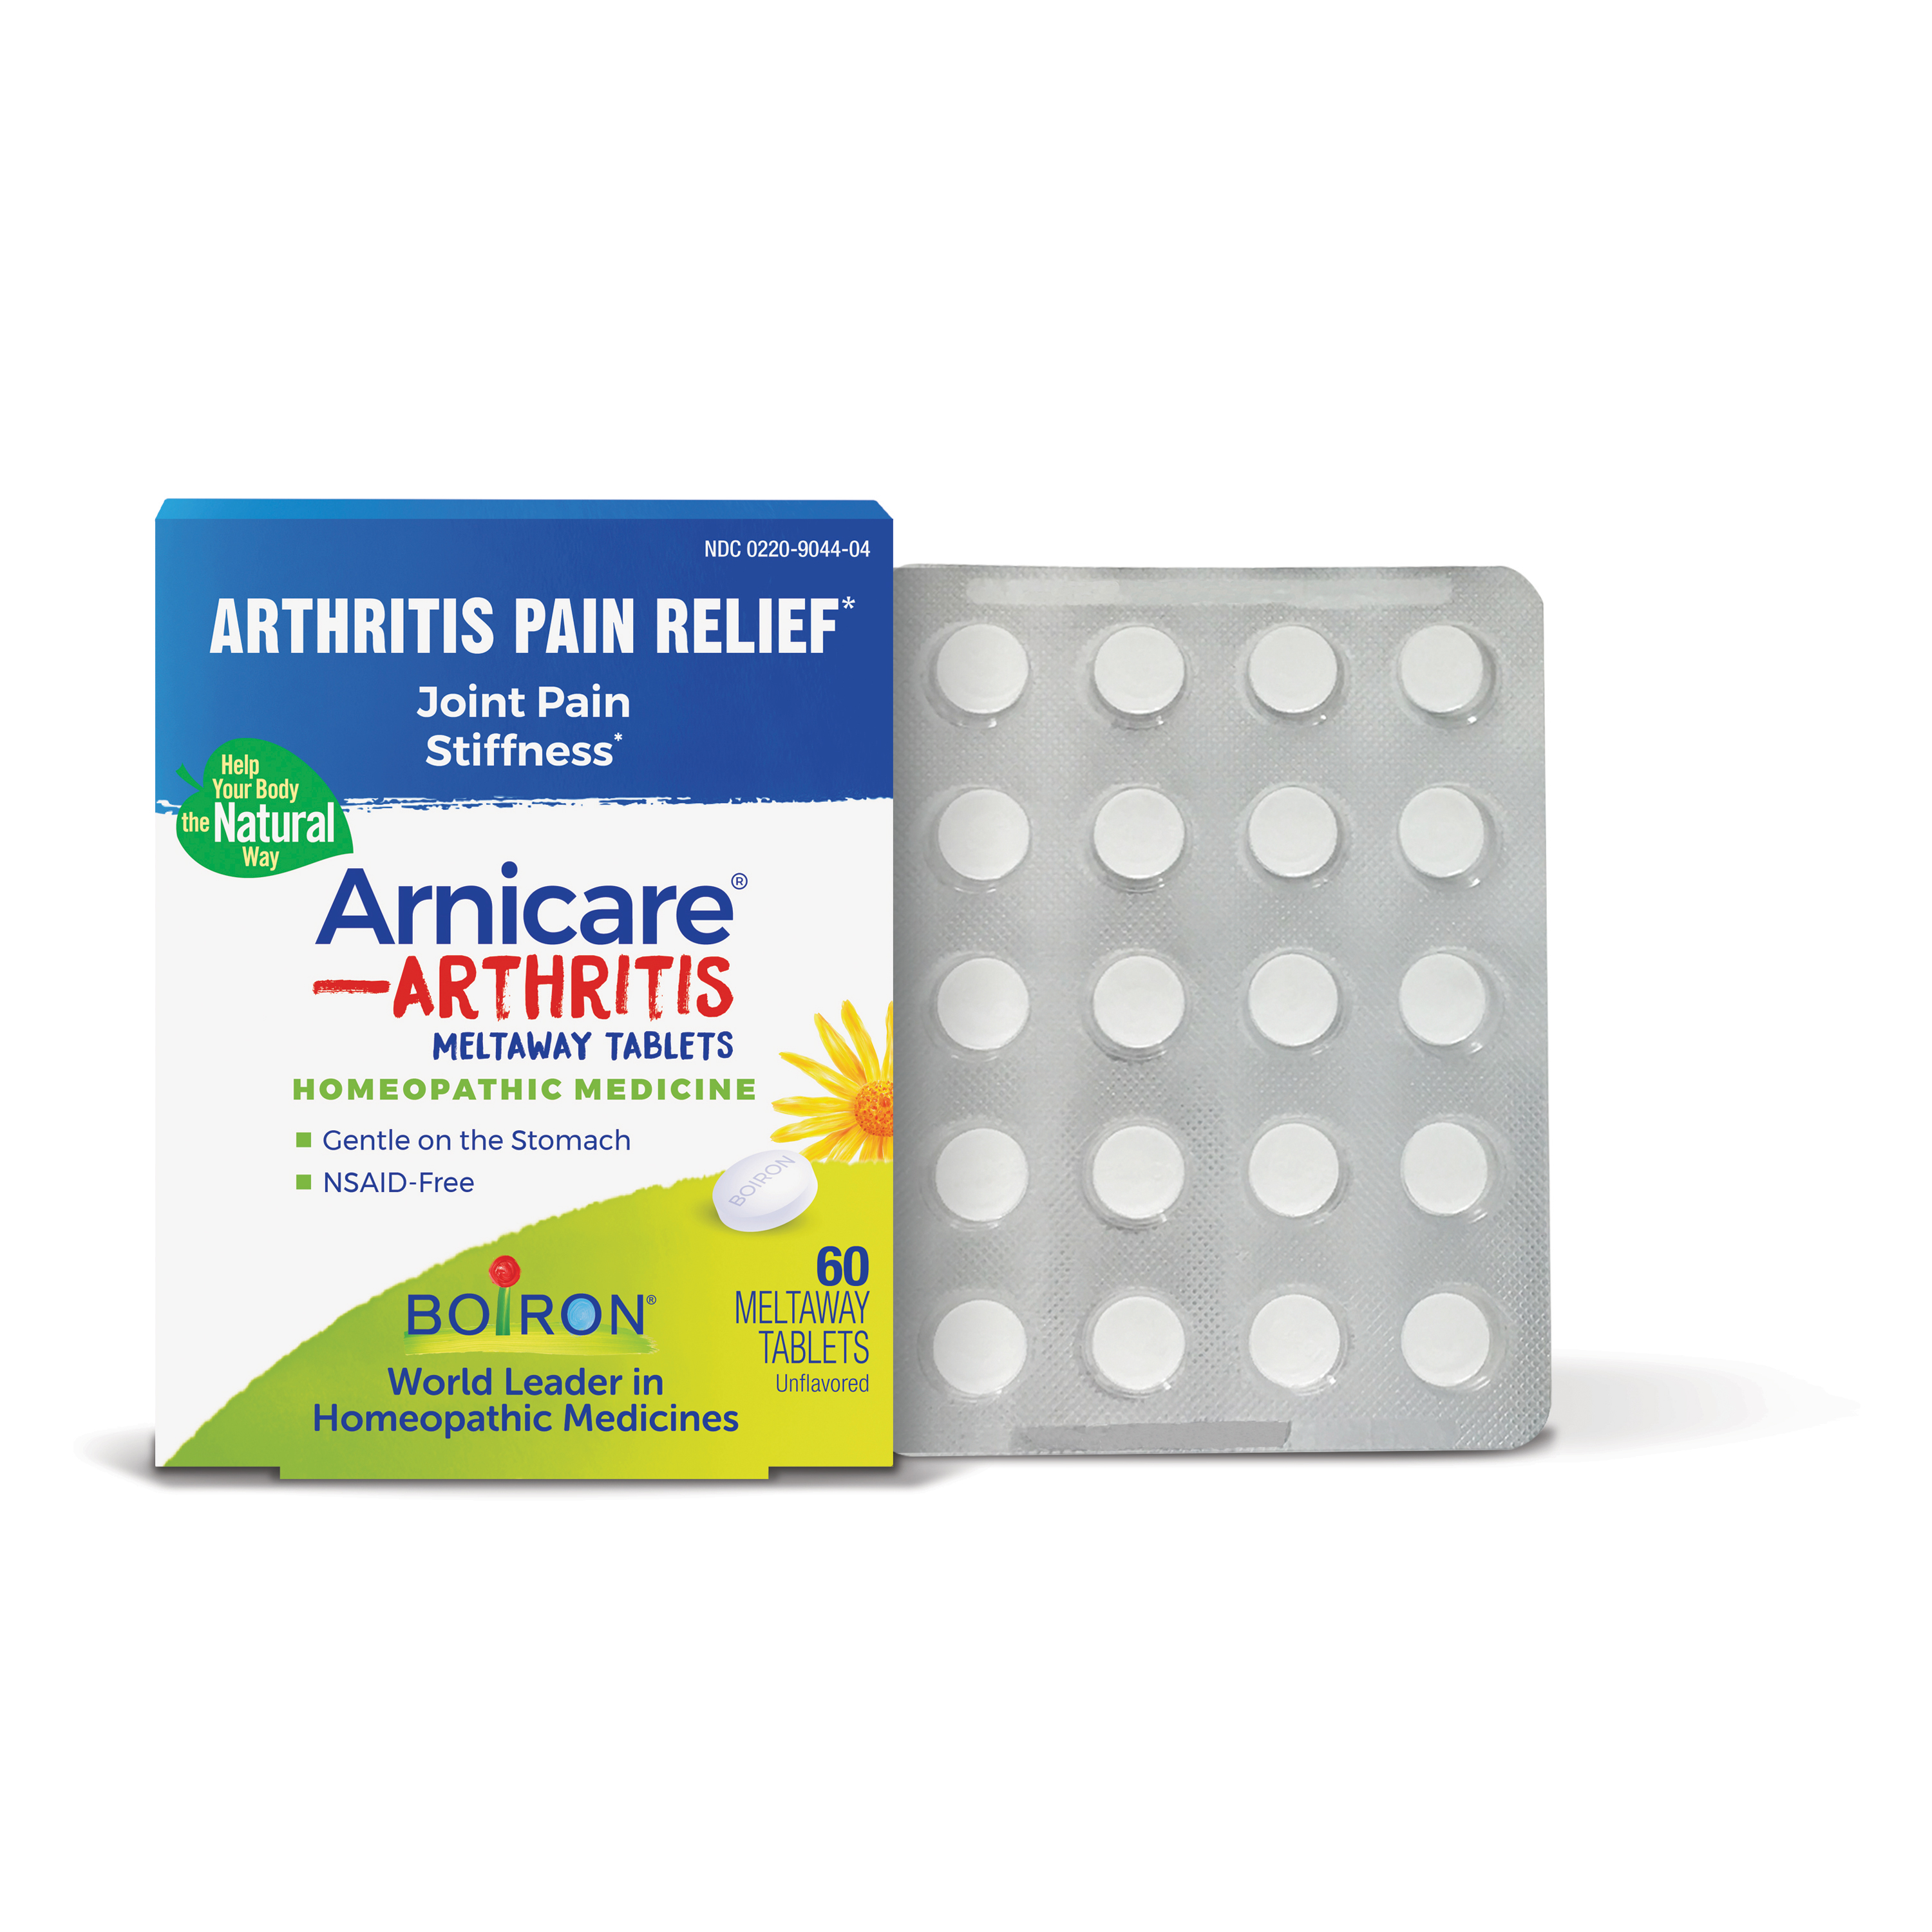 Image for Arnicare Arthritis